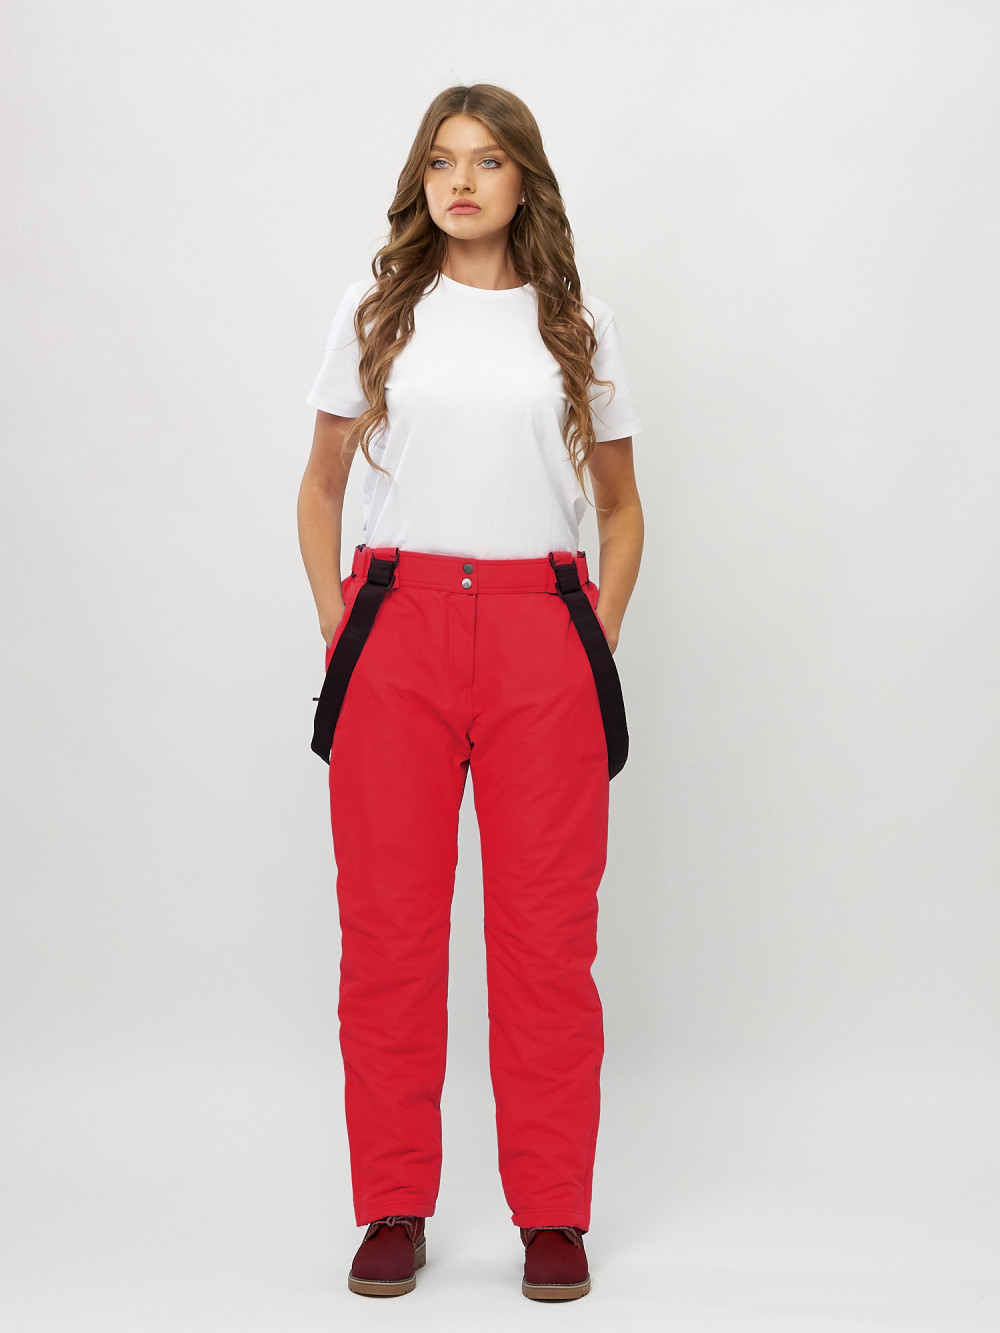 Купить оптом Полукомбинезон брюки горнолыжные женские big size красного цвета 66413Kr в Екатеринбурге